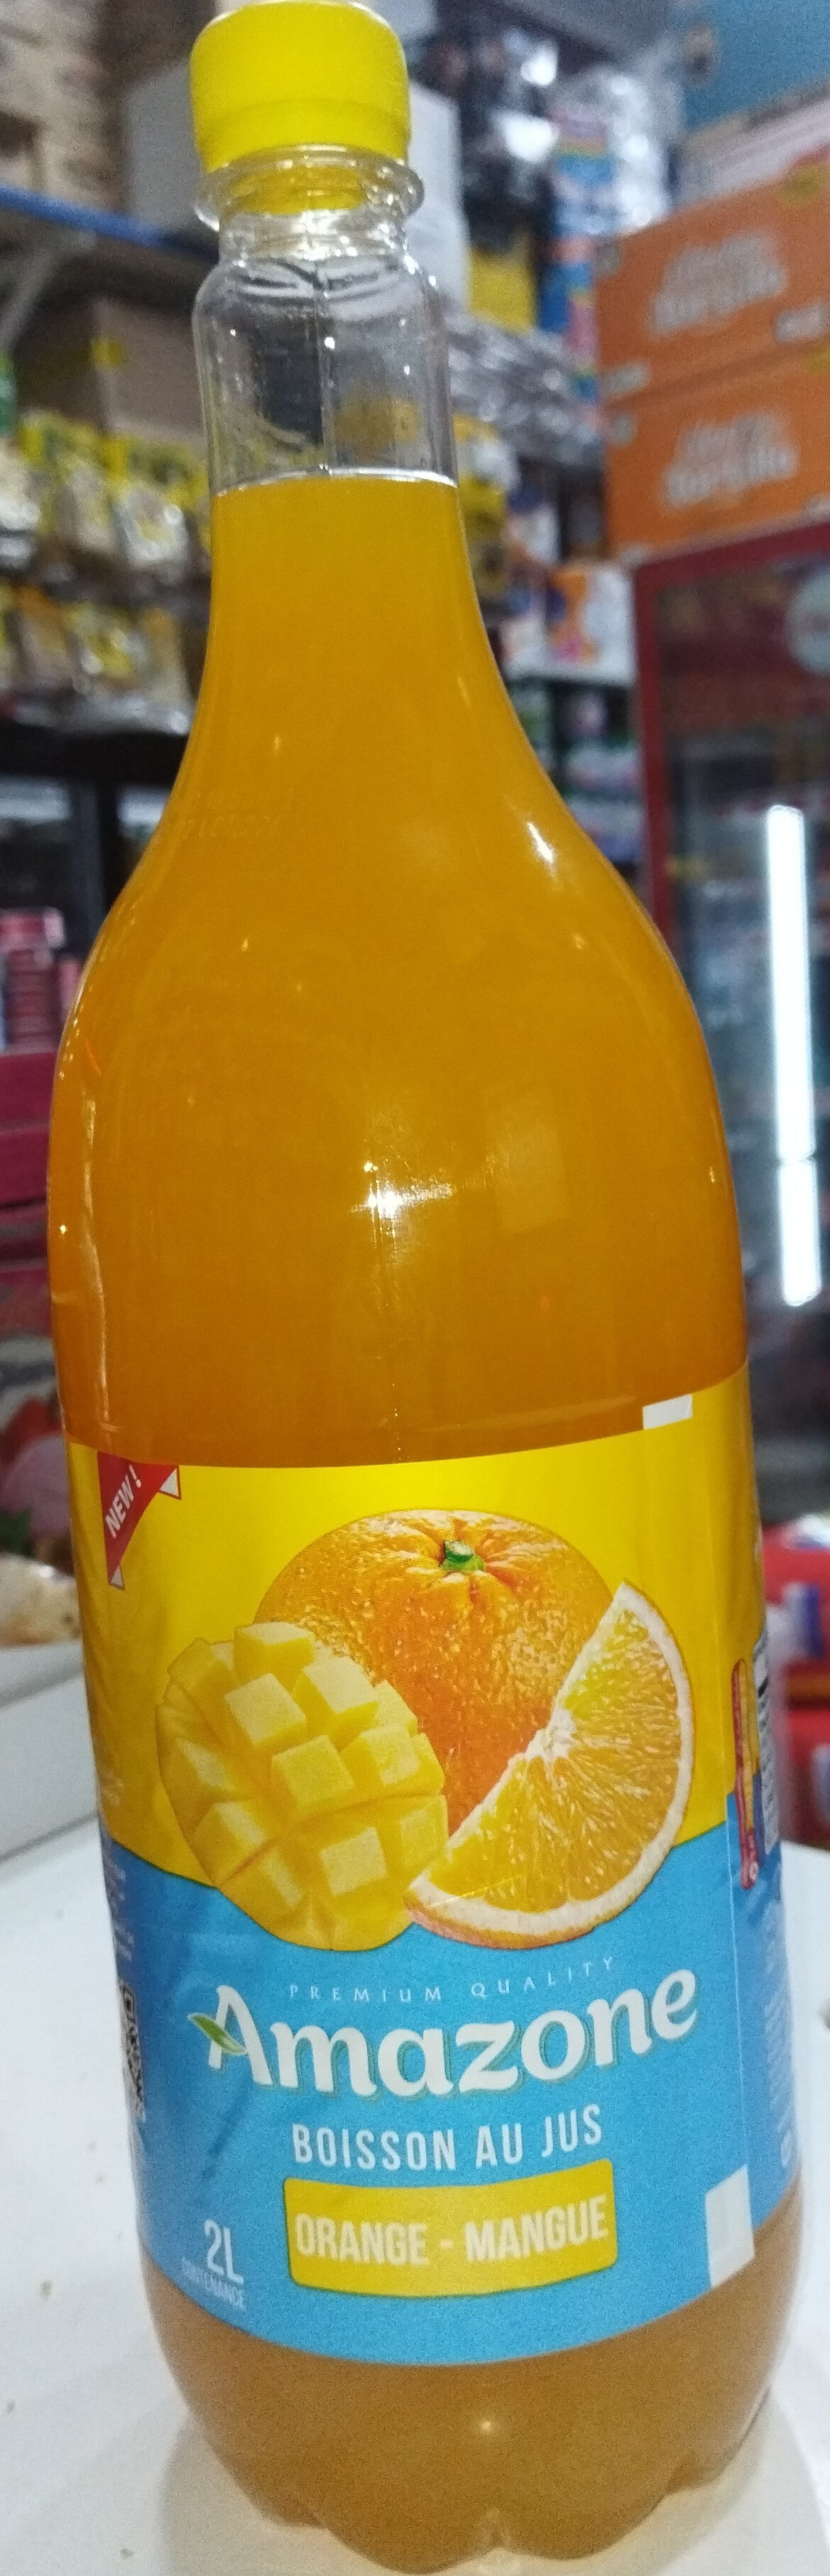 Amazon jus Orange-Mangue - Product - fr